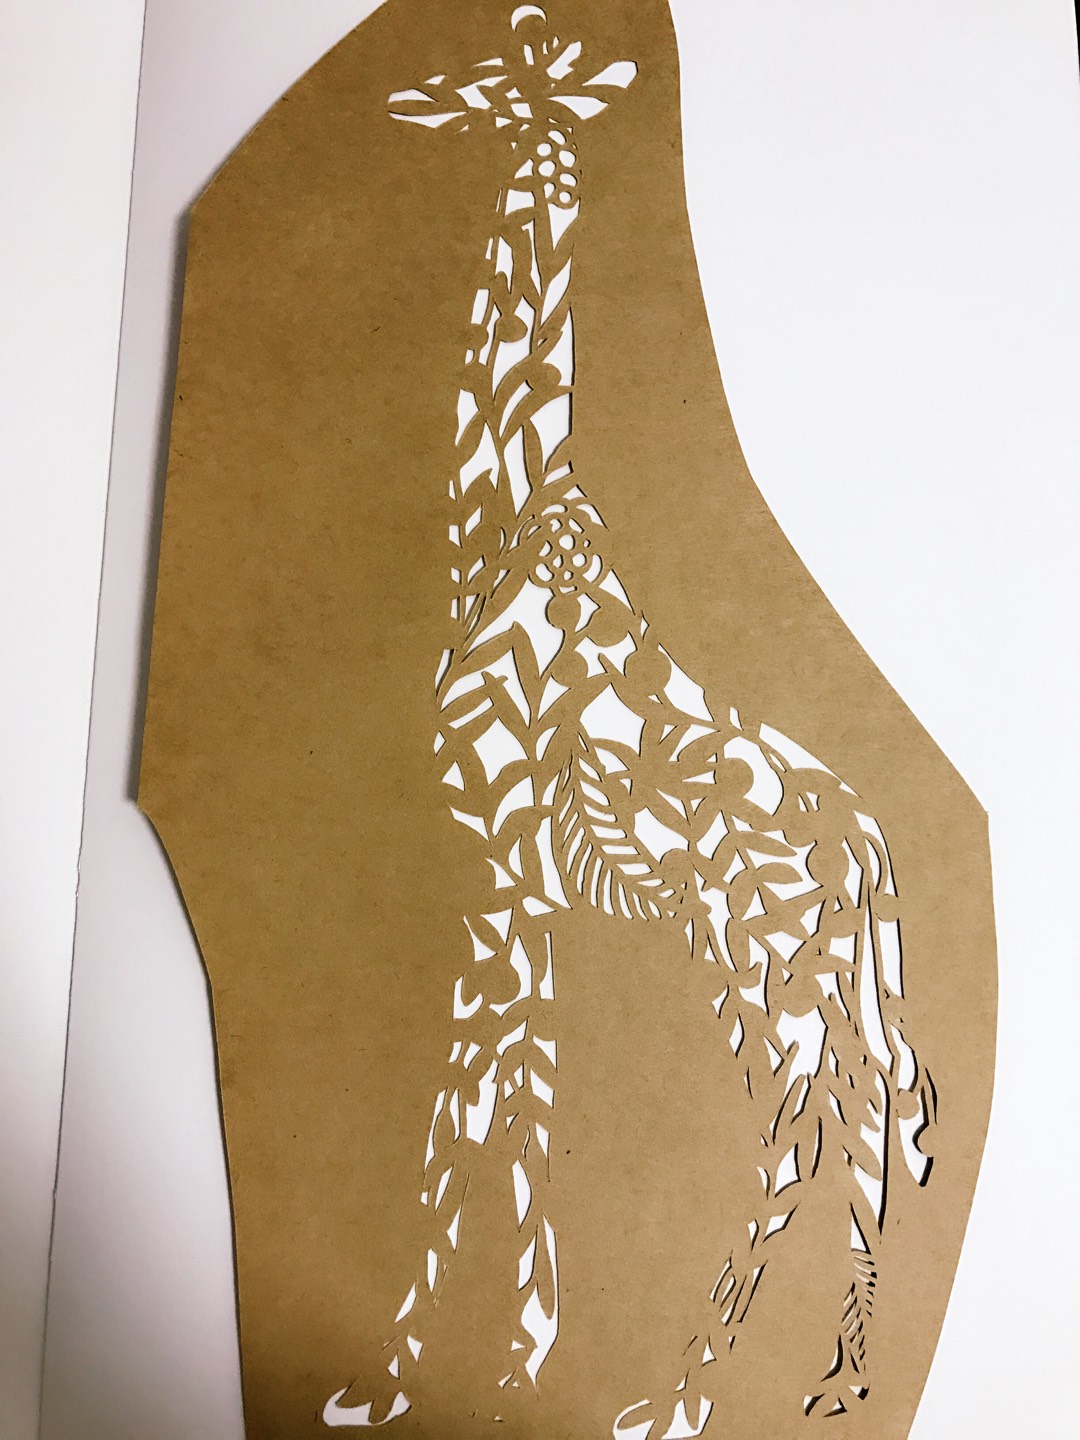 纸雕长颈鹿刻纸方法图解教程